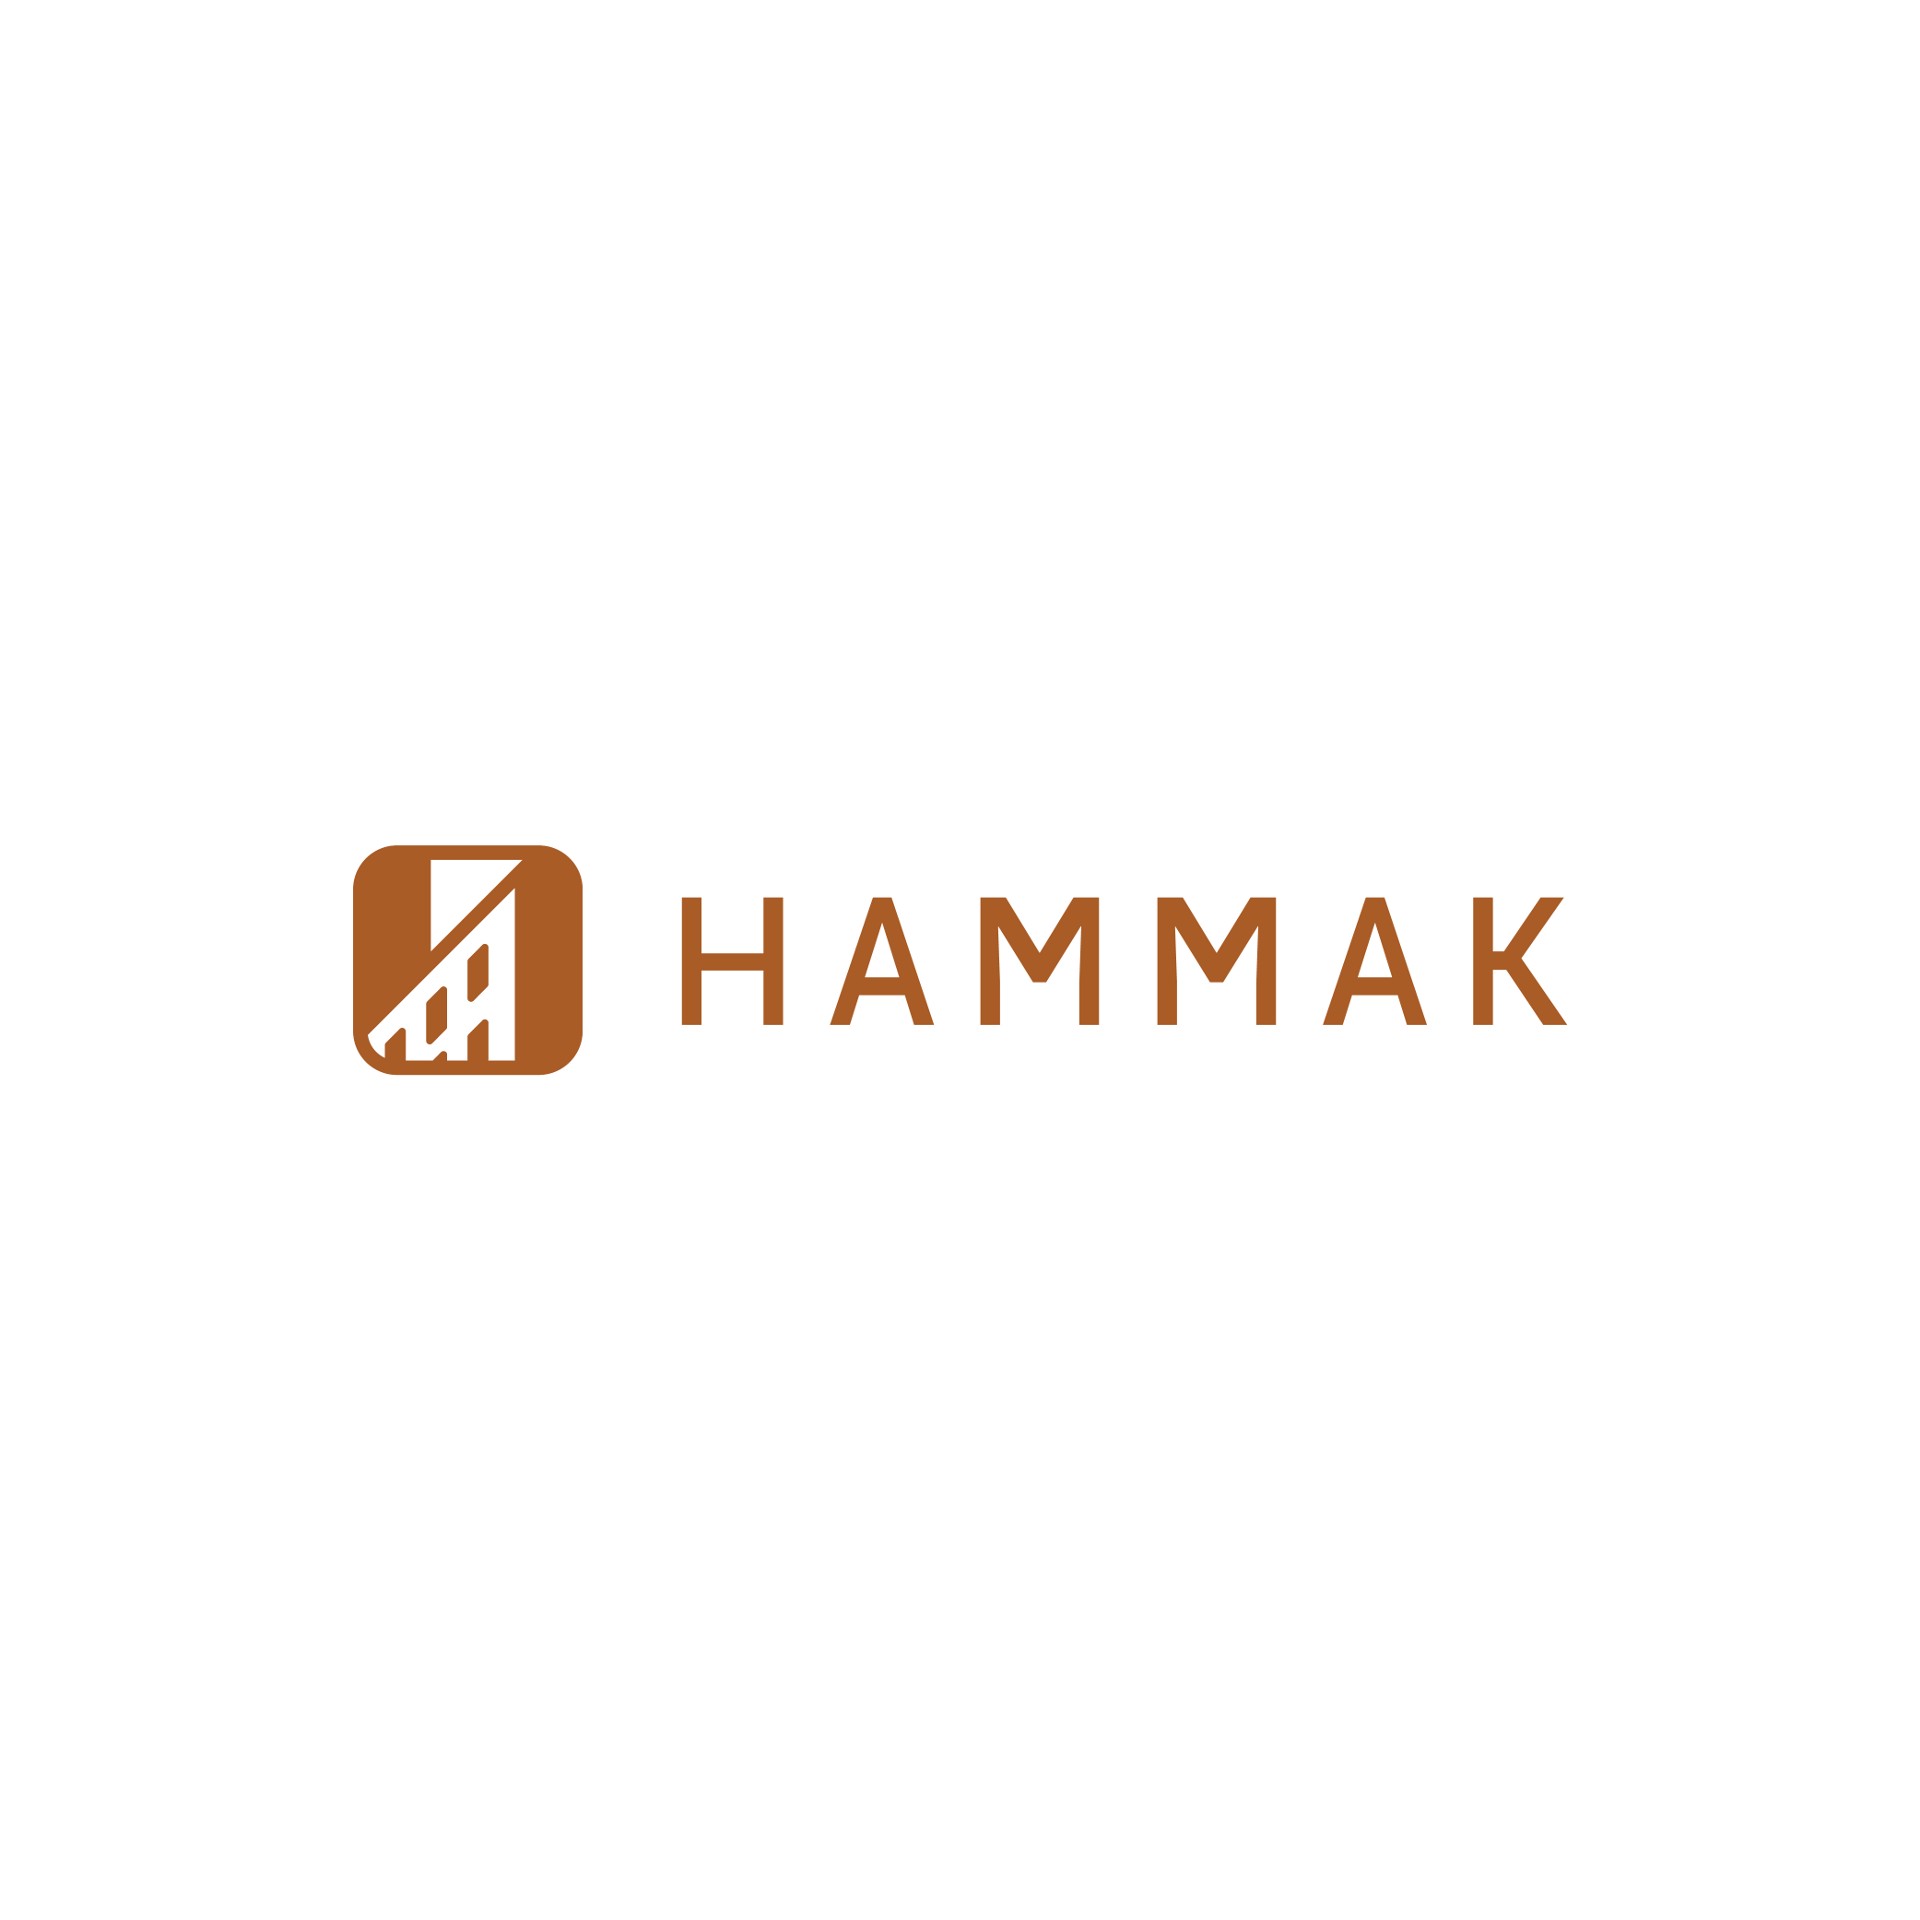 Hammak logo